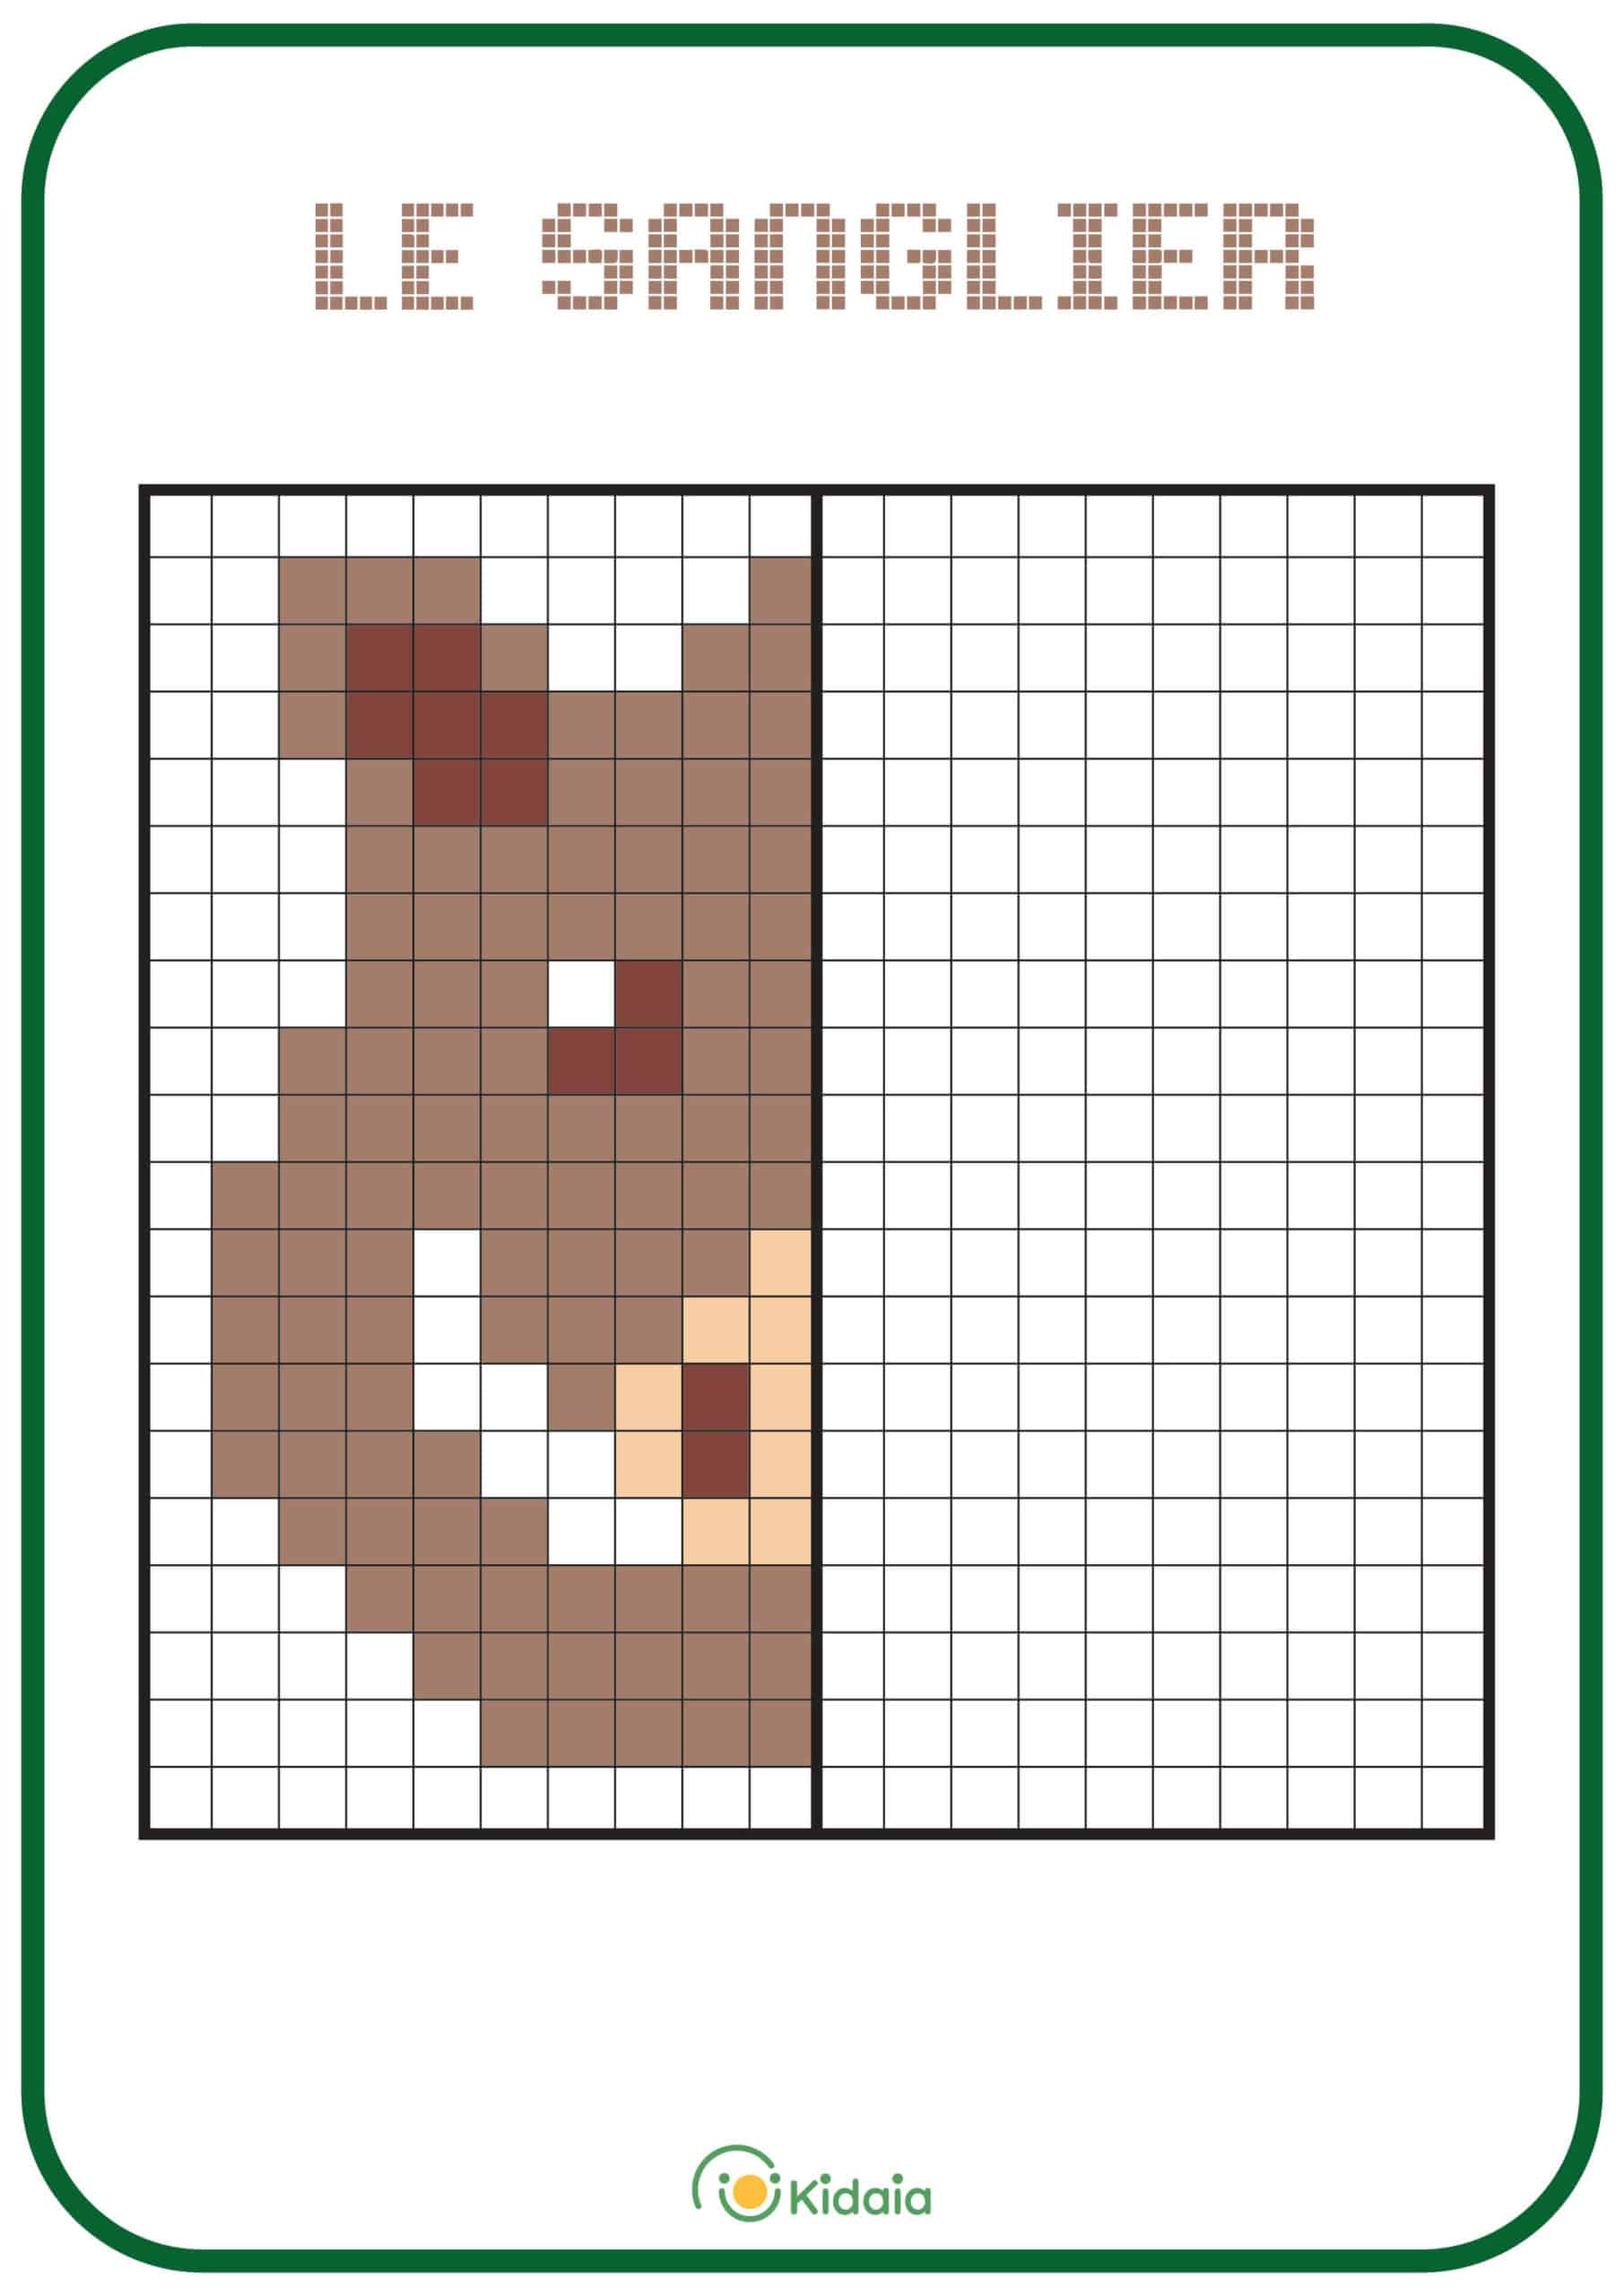 Image de sanglier en pixel art pour que les enfants apprennent la symétrie.